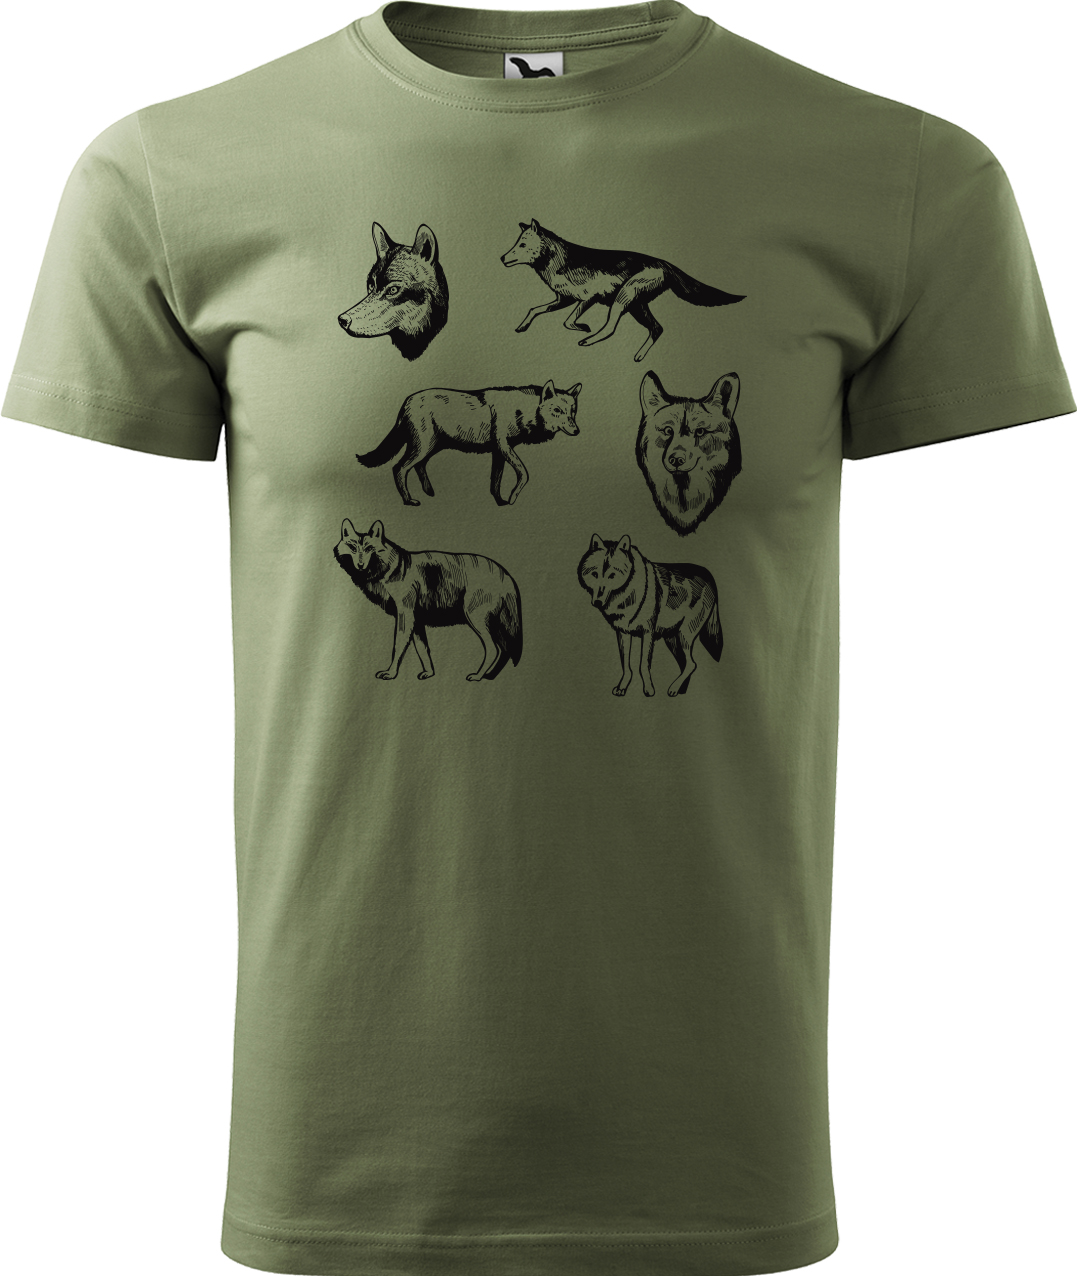 Pánské tričko s vlkem - Vlci Velikost: L, Barva: Světlá khaki (28), Střih: pánský